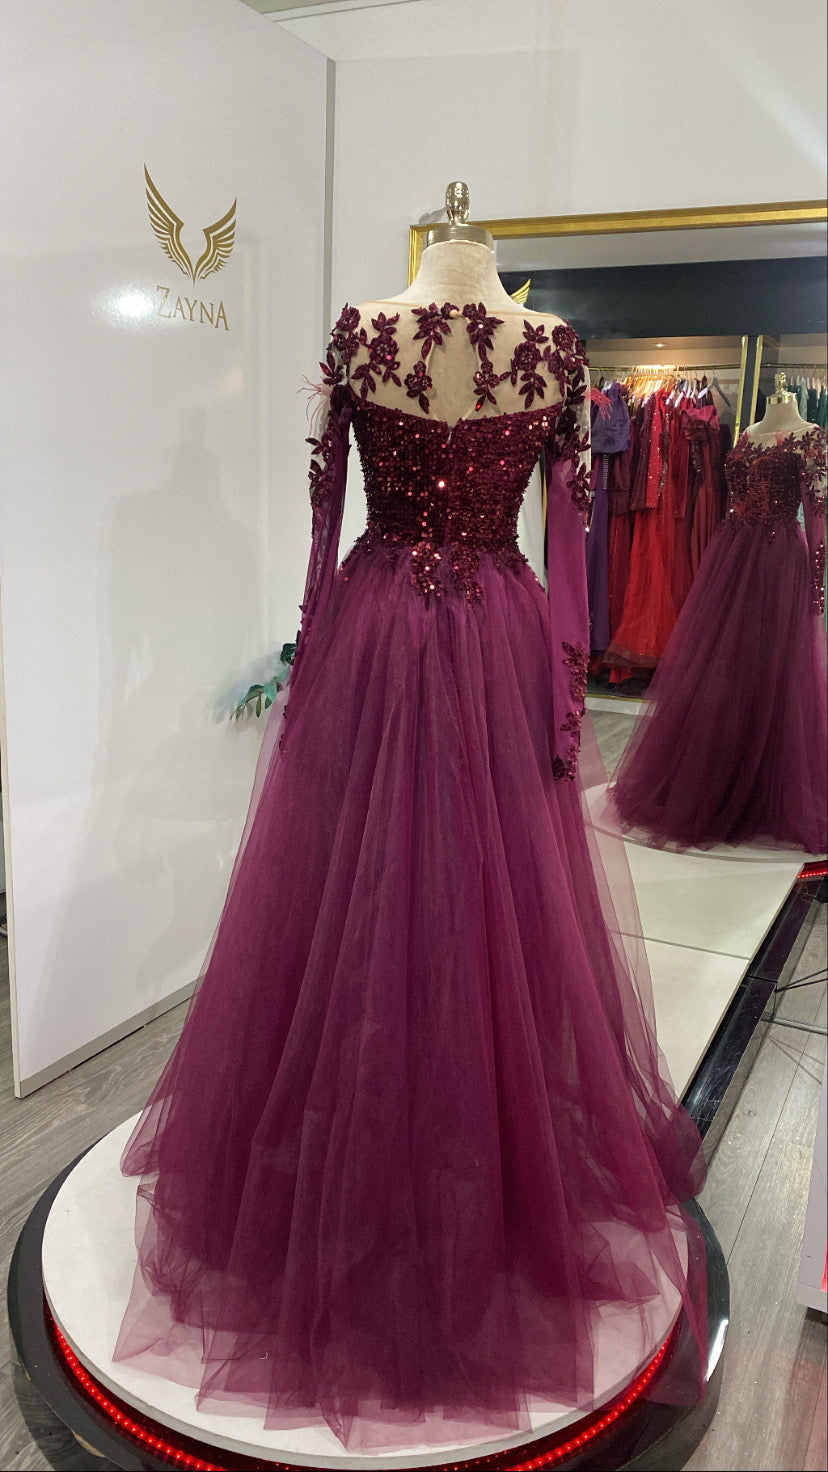 Our pink elegant dress